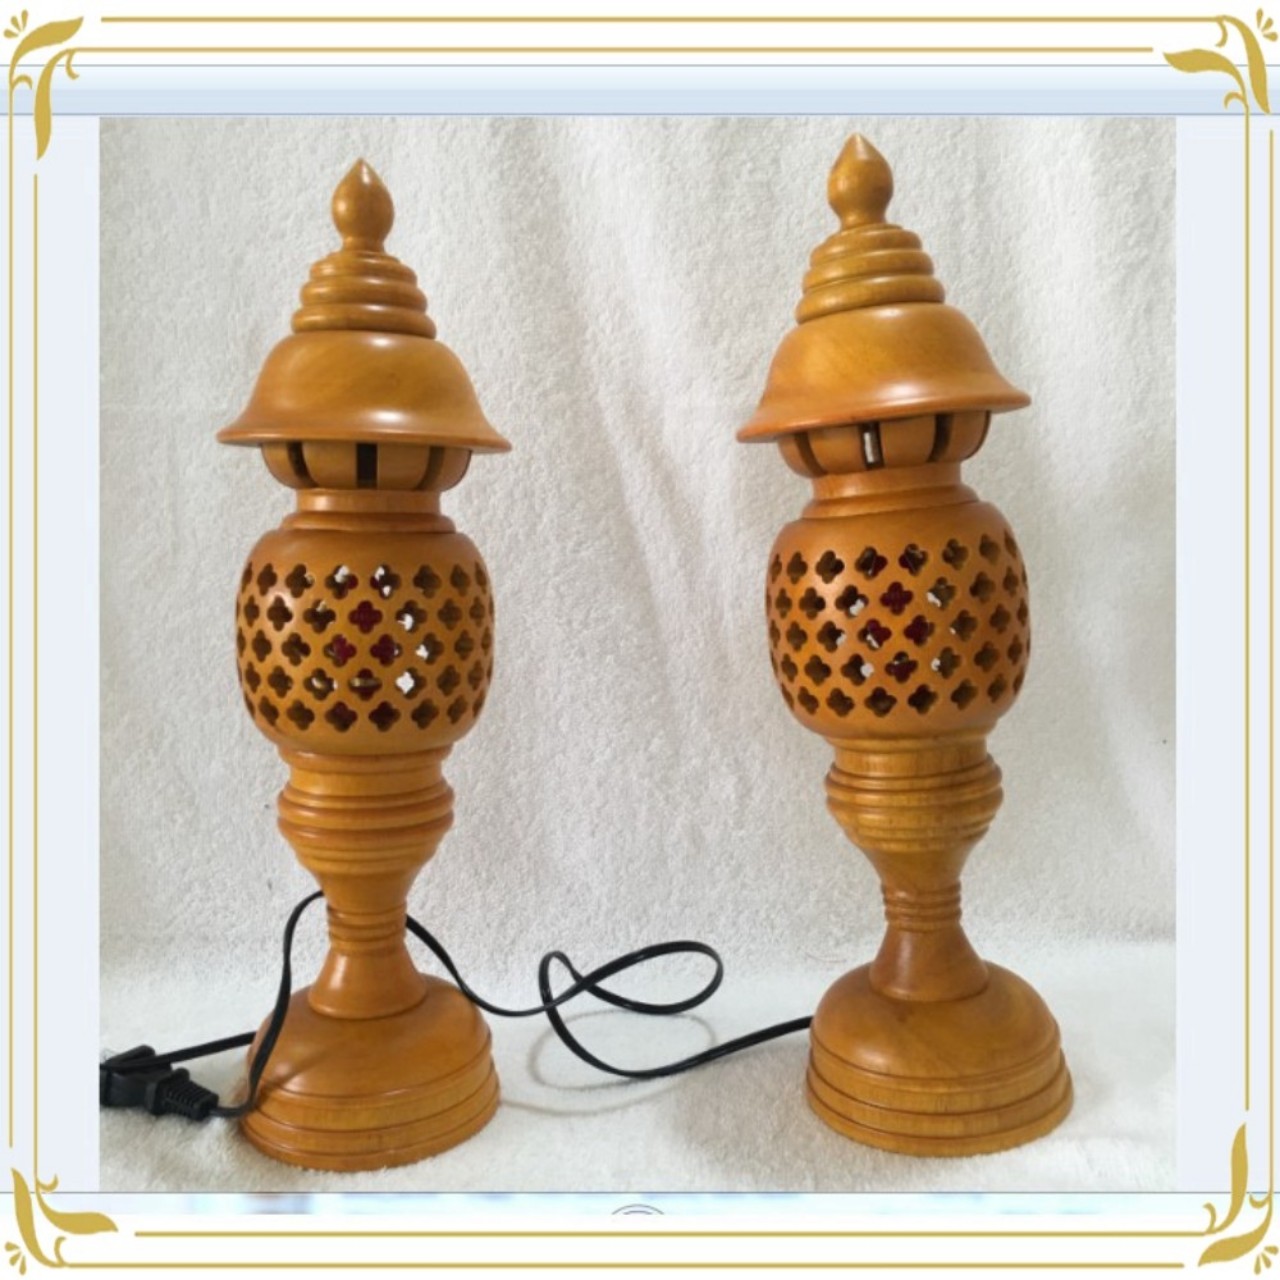 Đèn thờ gỗ xà cừ -Đèn thờ tổ ong-Đèn thờ gỗ cao 34cm - màu vàng